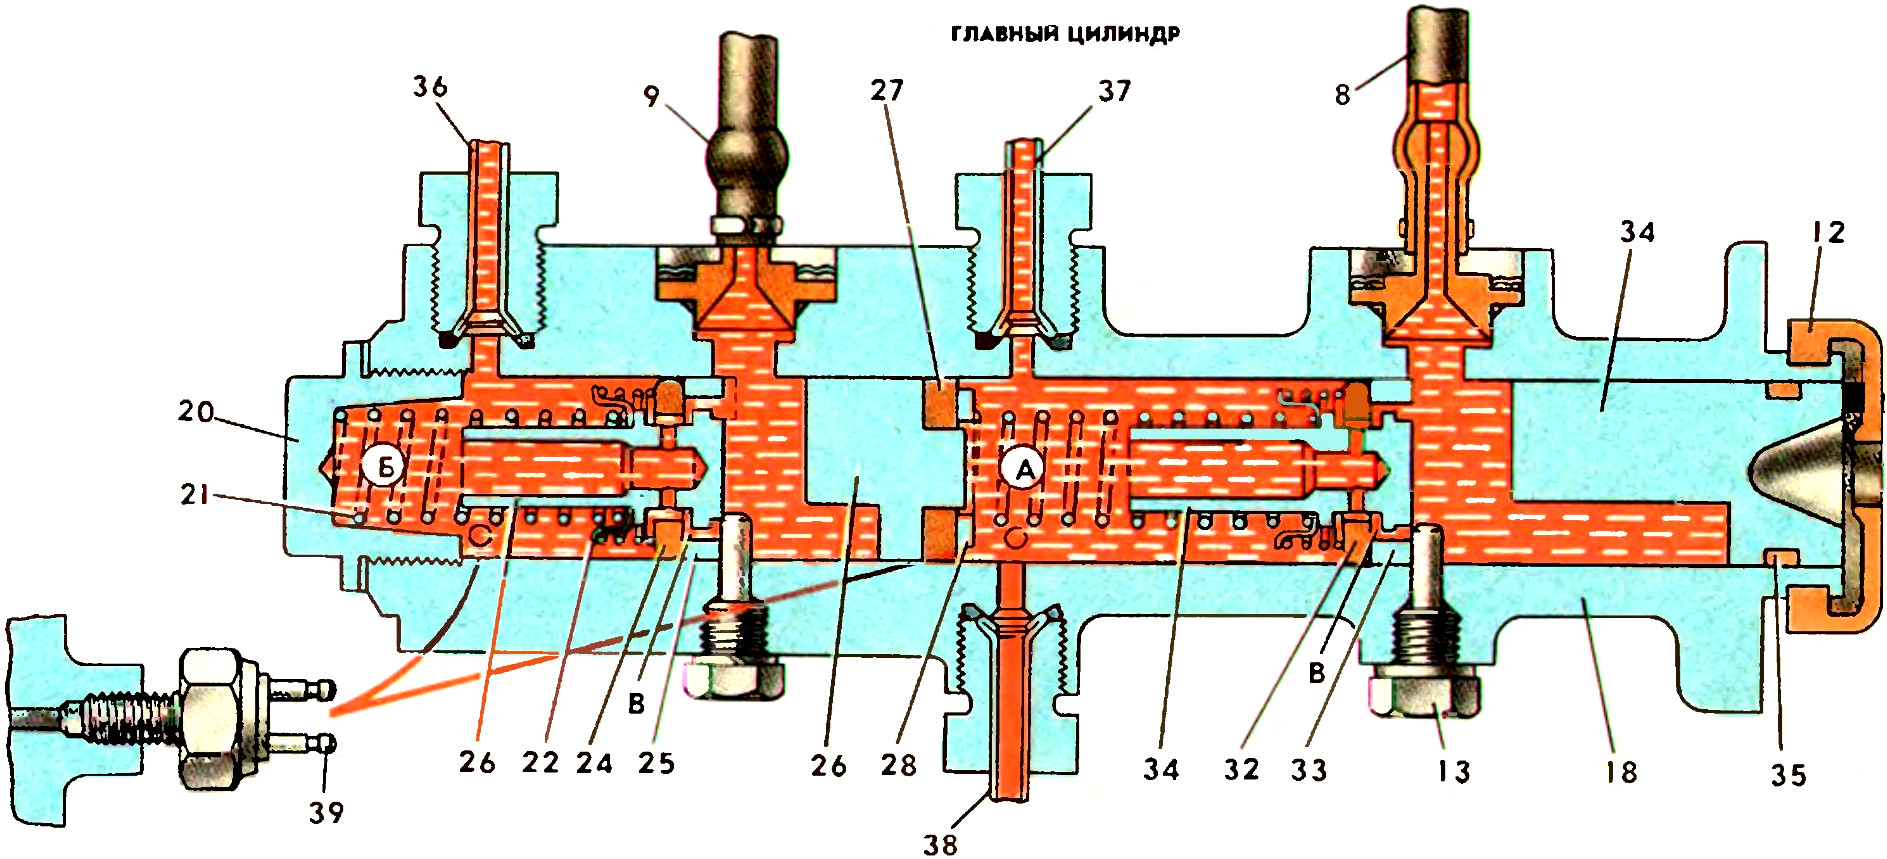 Схема работы главного тормозного цилиндра автомобиля ЗАЗ-968М Запорожец